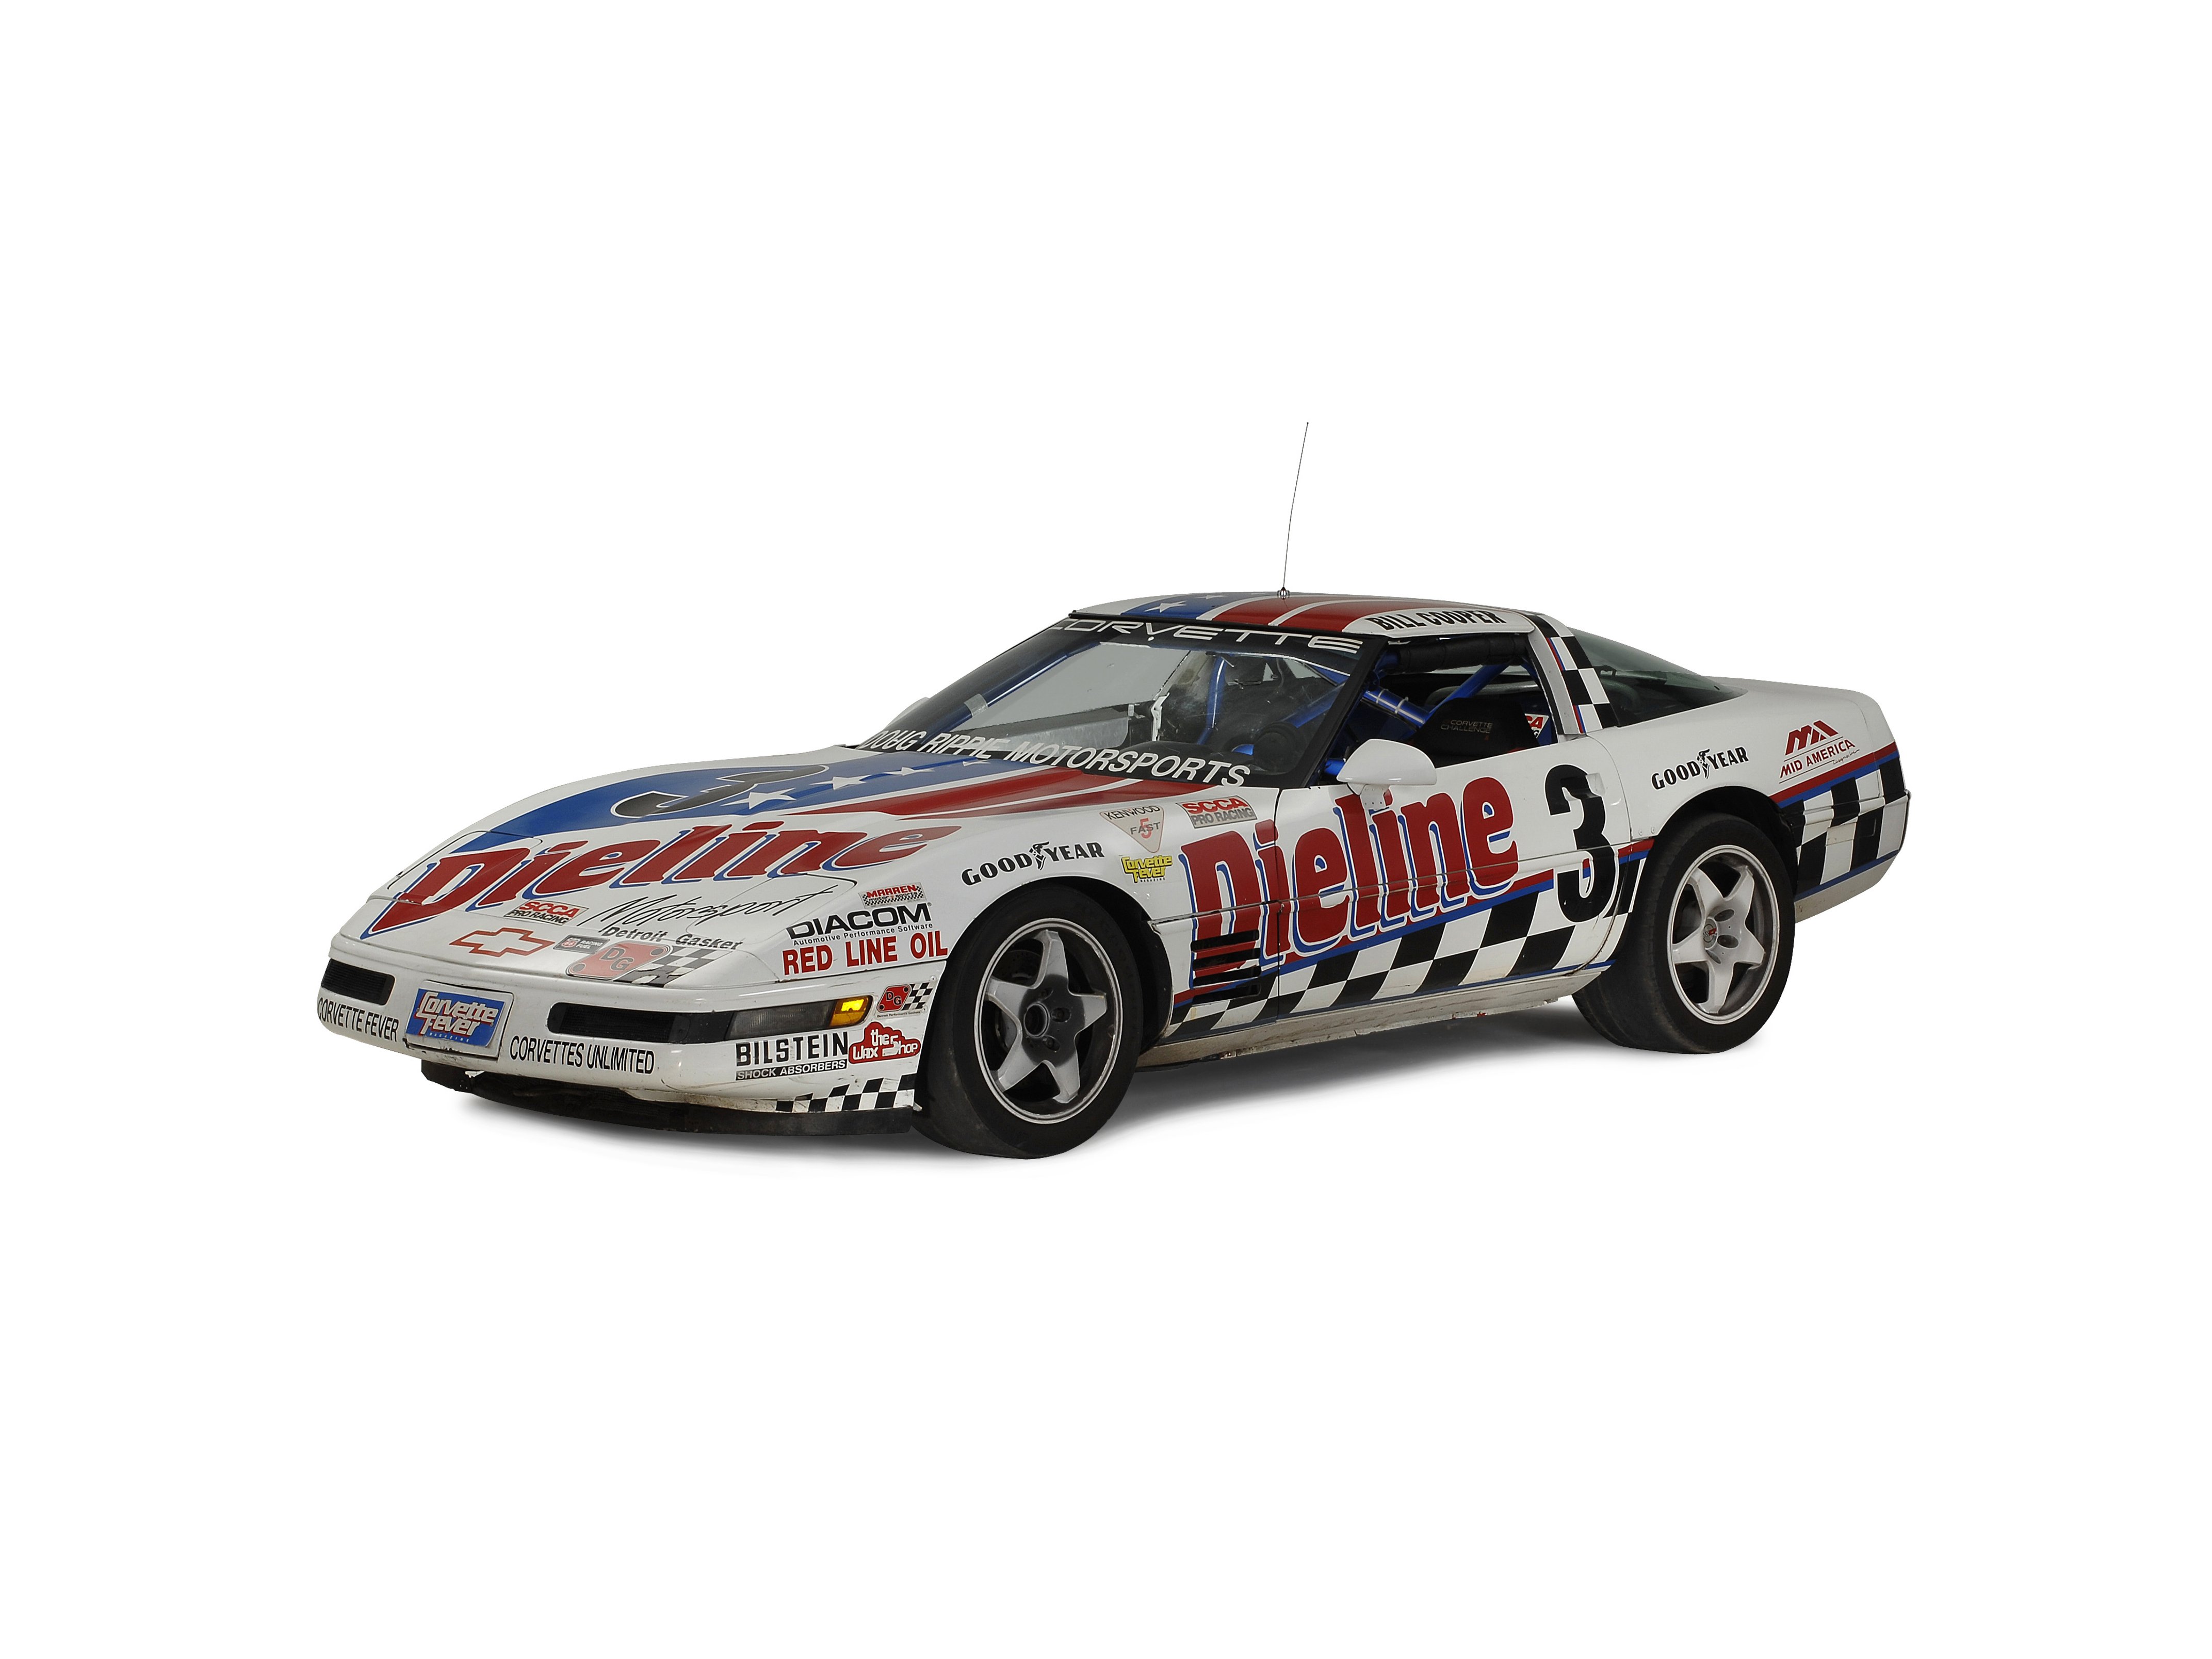 1993, Chevrolet, Corvette, Dieline, Race, Car, Usa, 13 Wallpaper